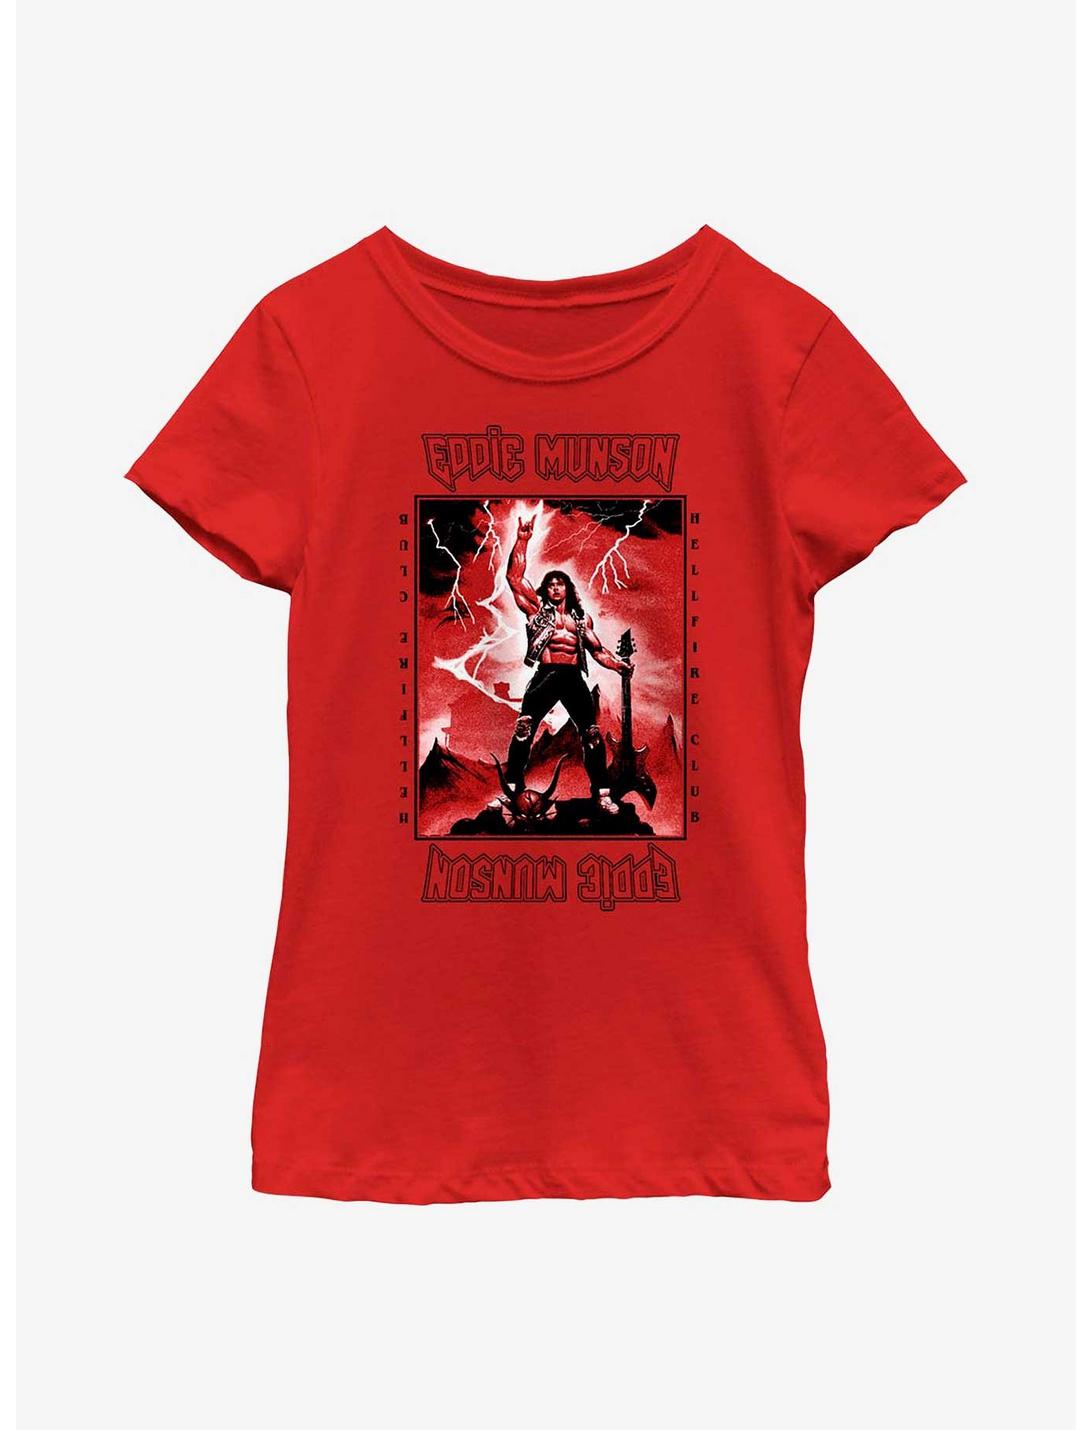 Stranger Things Power Of Eddie Munson Youth Girls T-Shirt, RED, hi-res